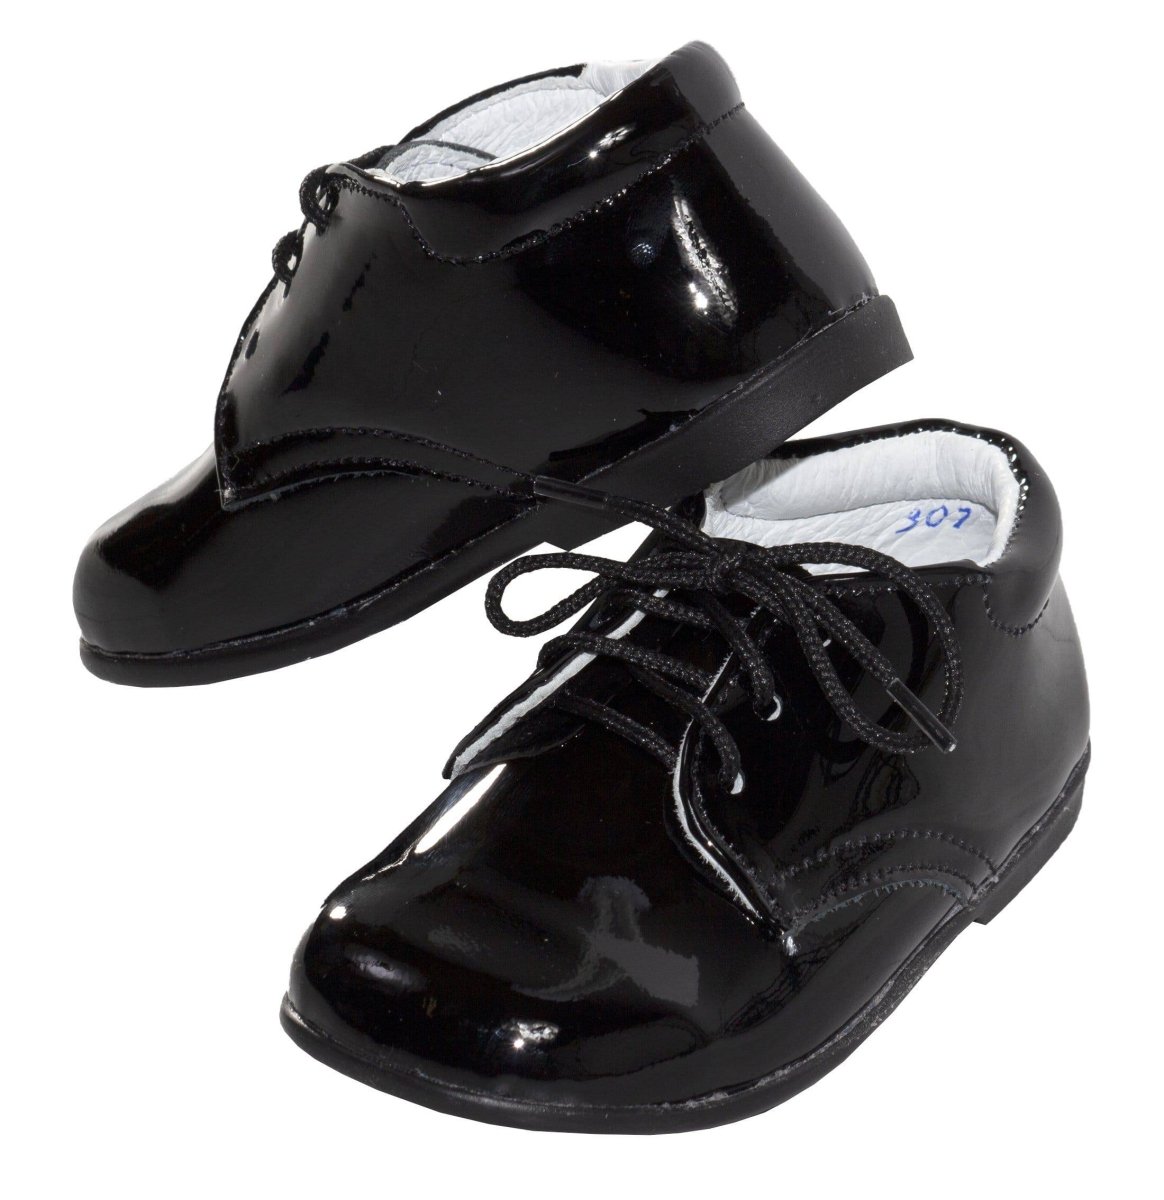 Infants Round Toe Black Formal Lace Up Shoe - Zac - Tuxgear